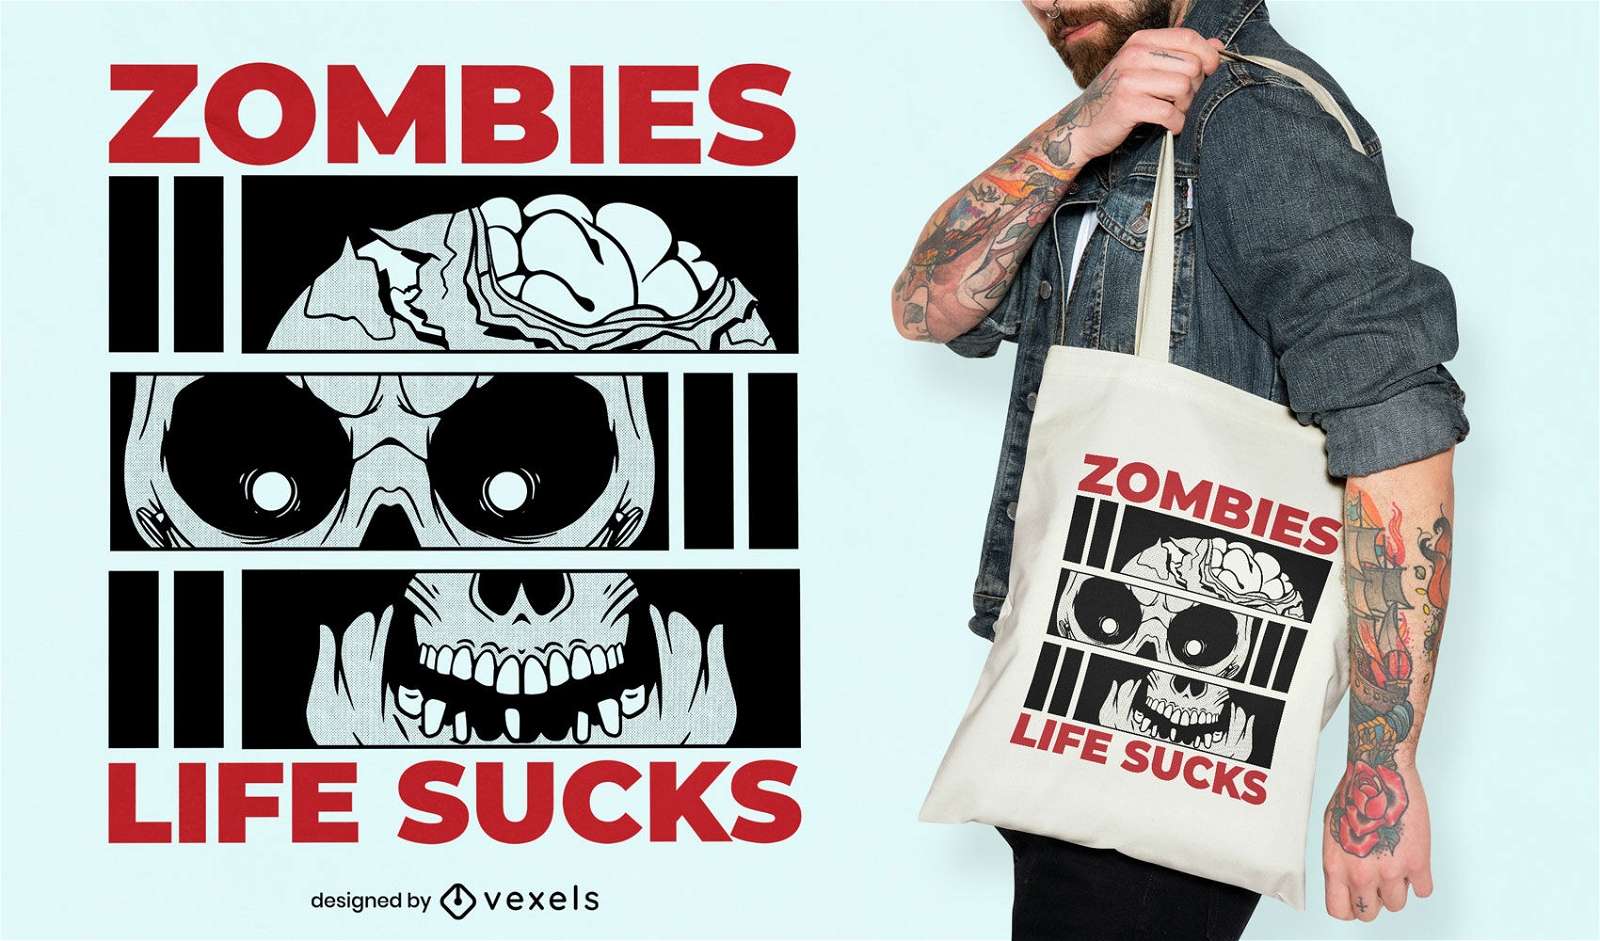 Zombies Life Sucks Tragetaschendesign